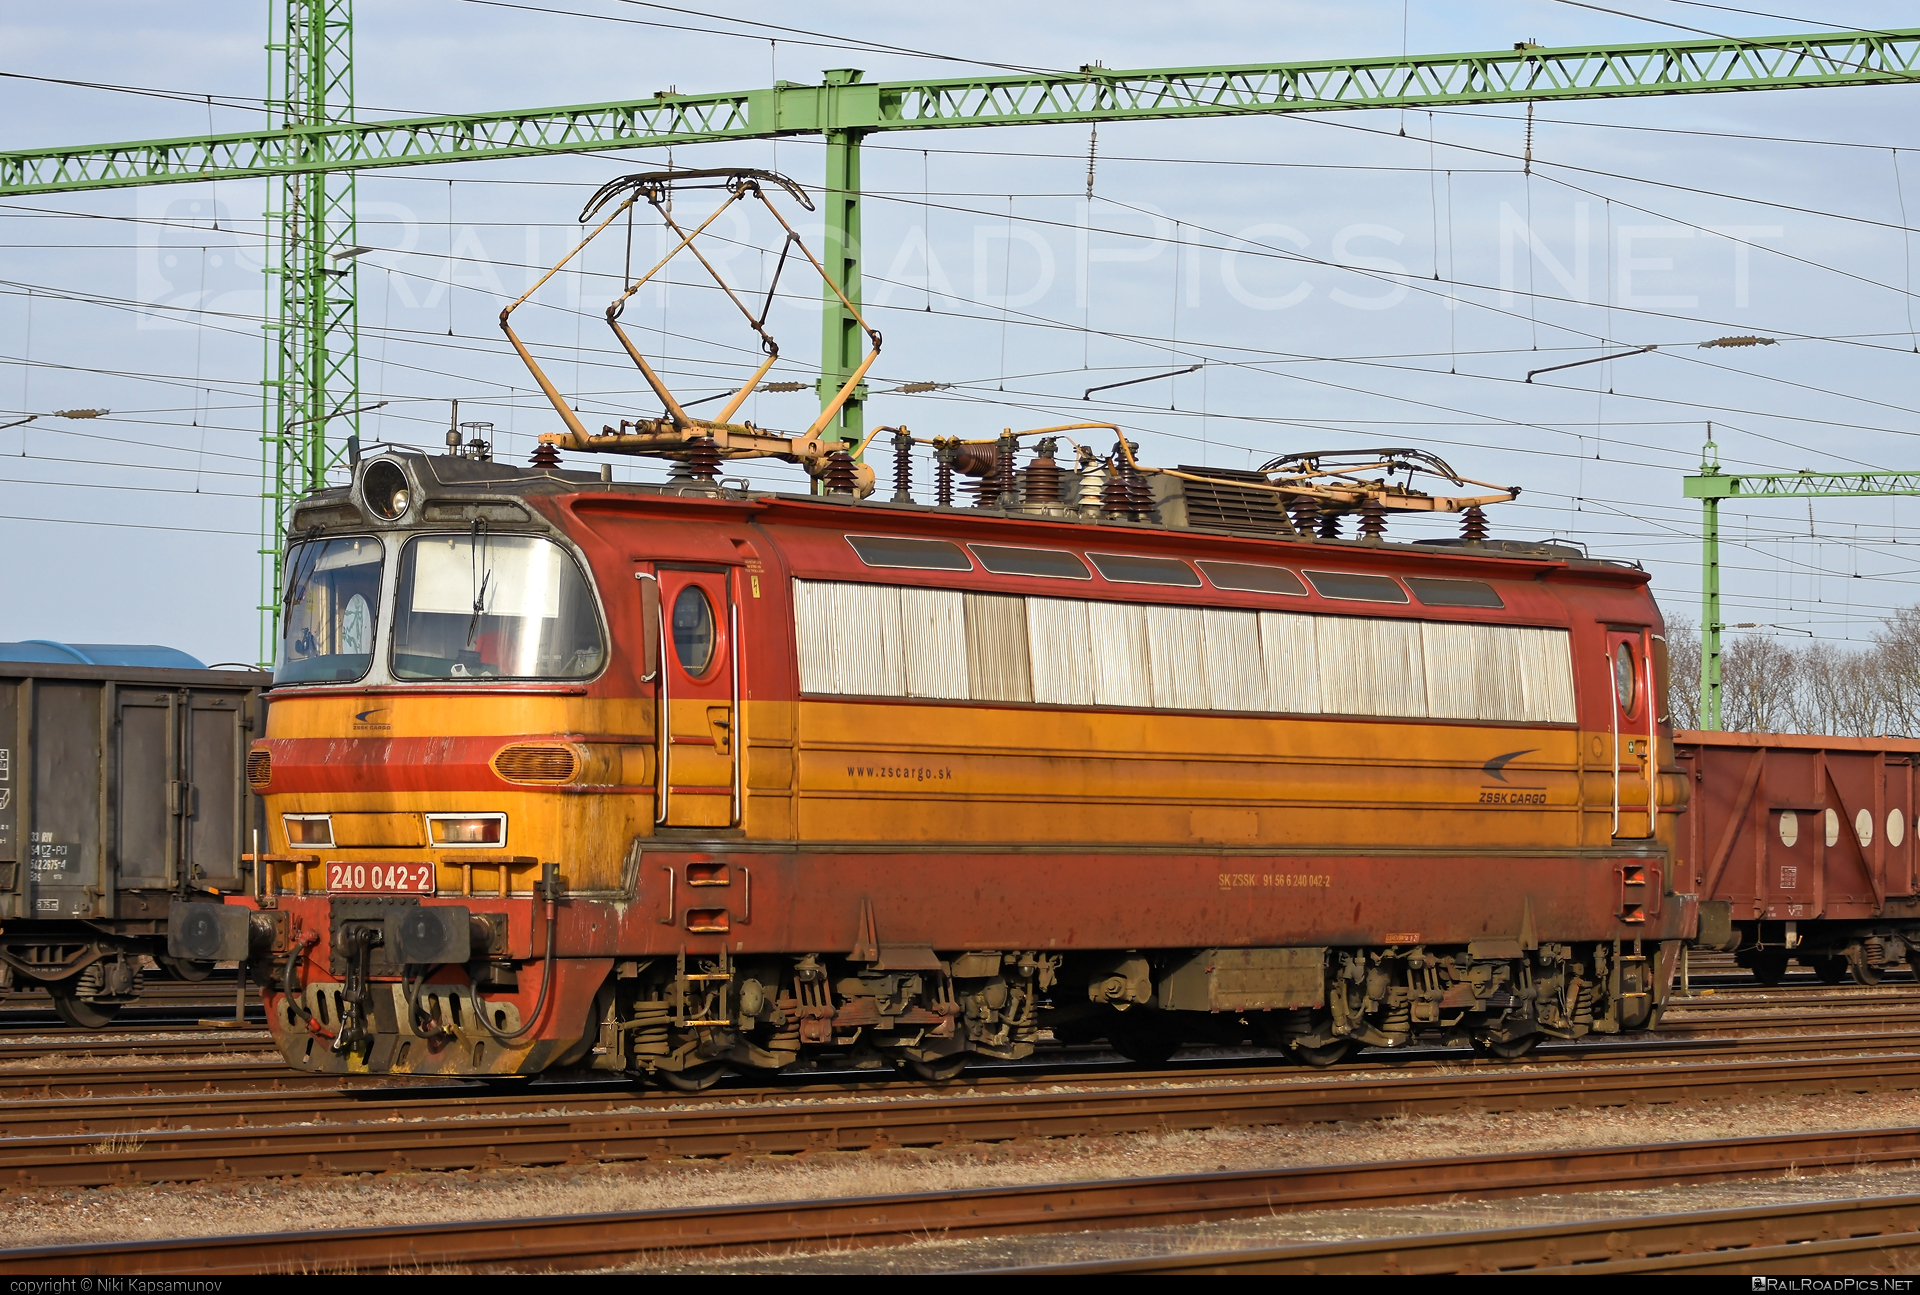 Škoda 47E - 240 042-2 operated by Železničná Spoločnost' Cargo Slovakia a.s. #ZeleznicnaSpolocnostCargoSlovakia #laminatka #locomotive240 #skoda #skoda47e #zsskcargo